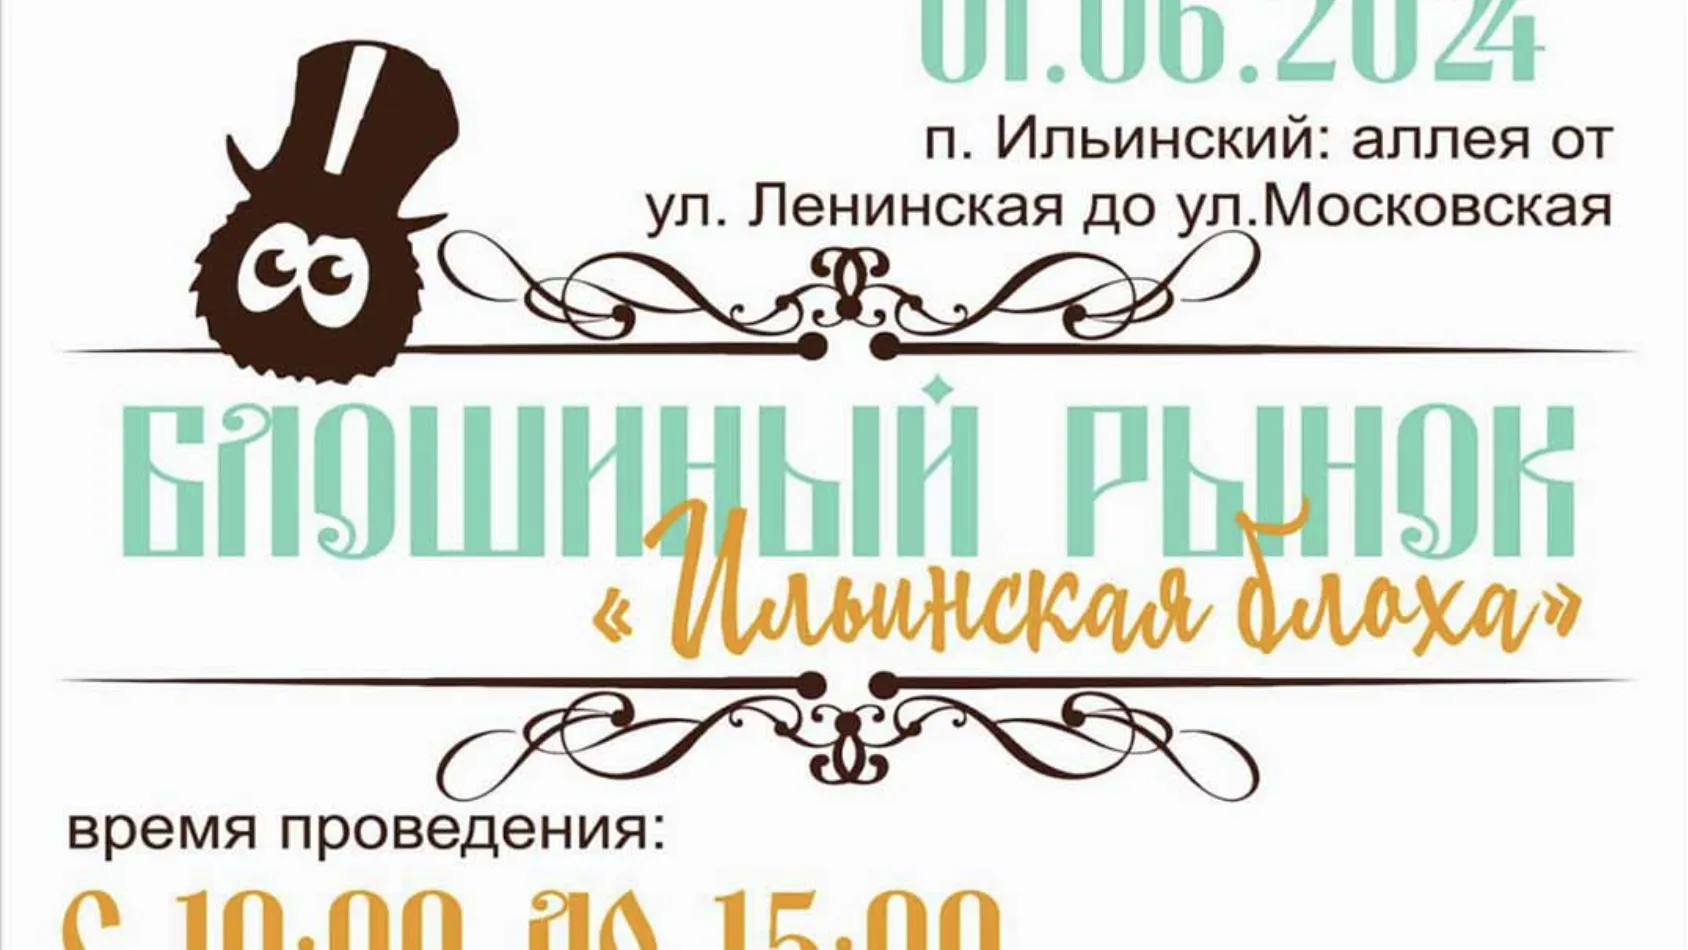 Ярмарка «Ильинская блоха» пройдет 1 июня в Раменском округе